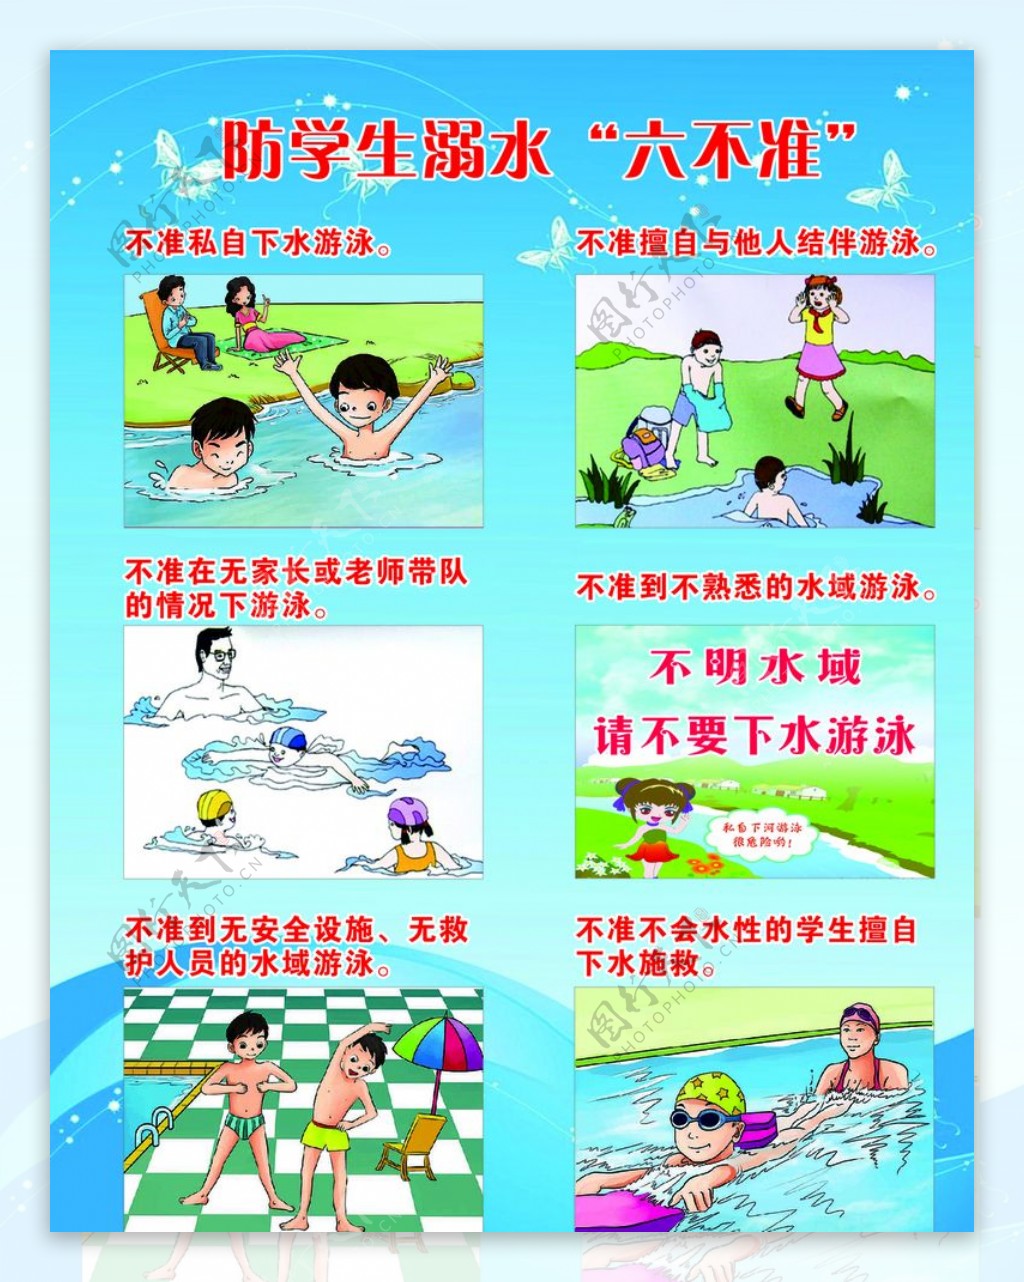 蓝白色防溺水矢量场景插画元素矢量公益宣传中文微信公众号小图 - 模板 - Canva可画